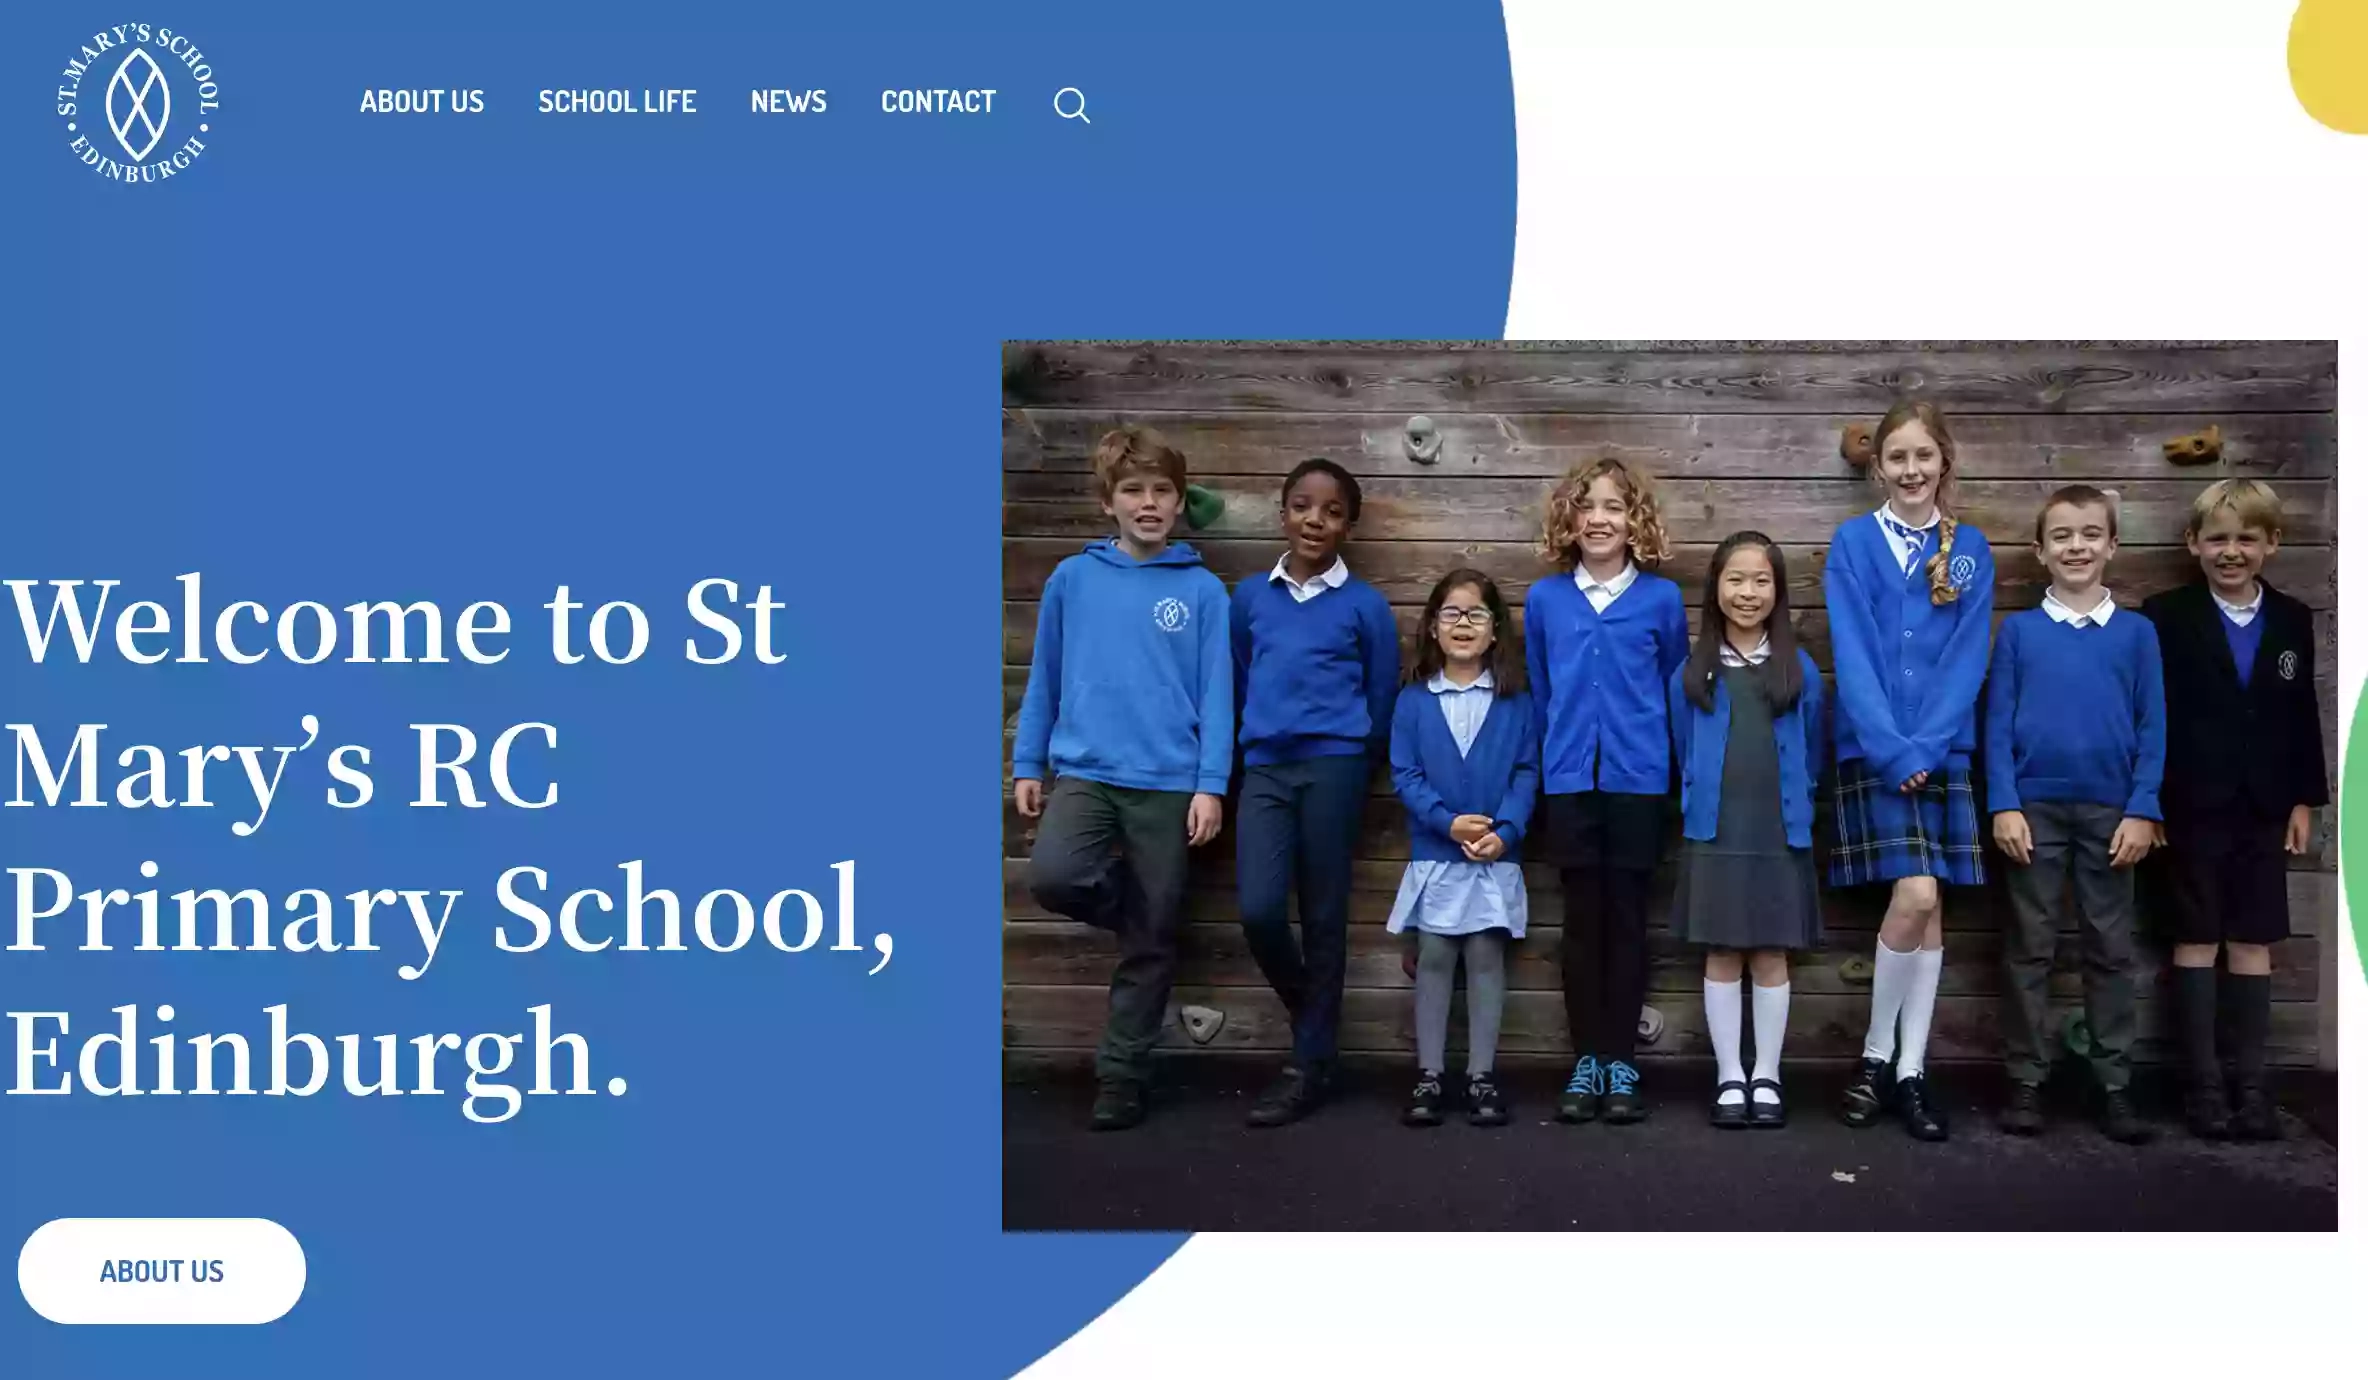 Saint Mary's RC Primary School